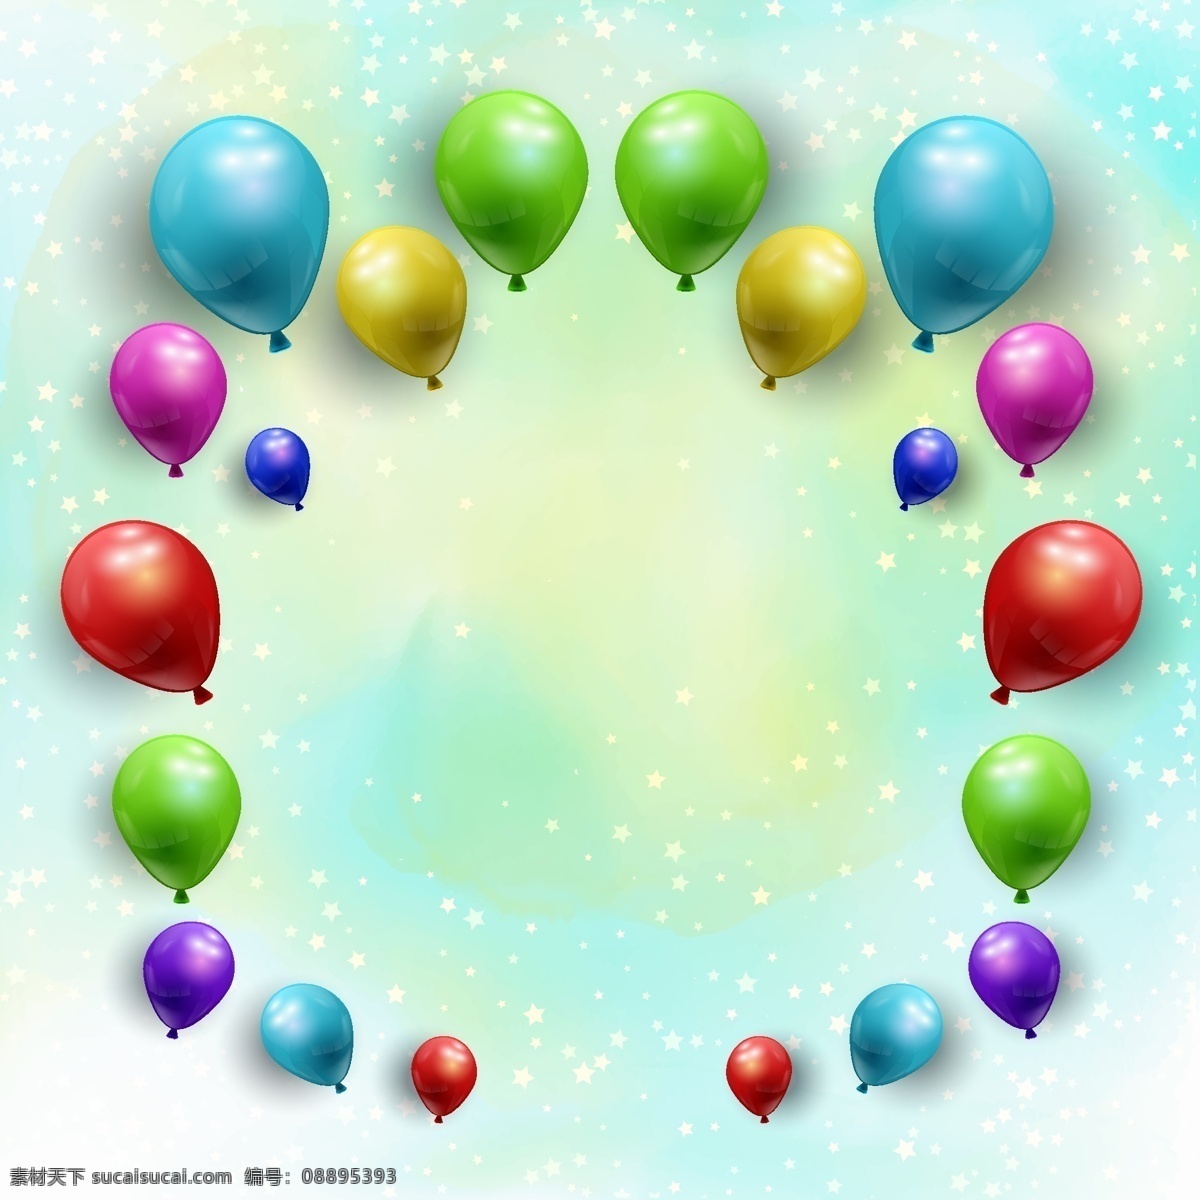 气球 矢量图 炫丽背景图 卡通图片 卡通气球 喜庆 婚礼 气球婚礼 气球装饰 创意气球 气球派对 绚丽背景 红气球 紫色背景 紫色素材 矢量气球 气球矢量 气球图片 气球素材 小清新 紫色气球 粉色气球 蓝色气球 图案 气球照片 透明气球 气球背景 气球图 花样气球 气球壁纸 艺术气球 气球设计 矢量图气球 设计元素 卡通设计